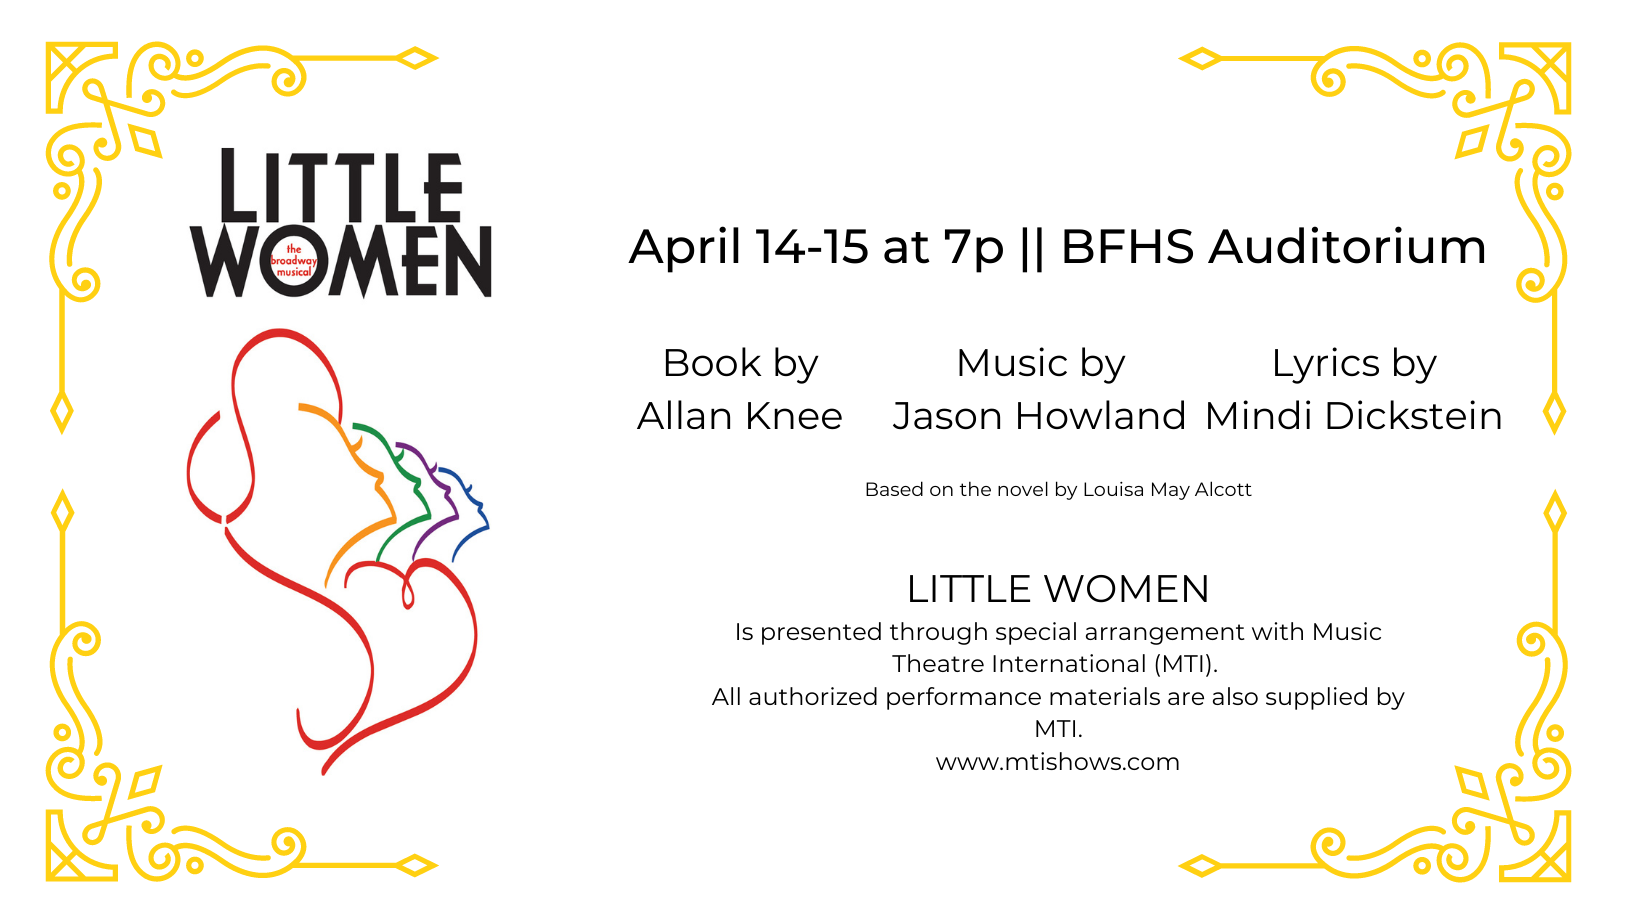 Little Women event details